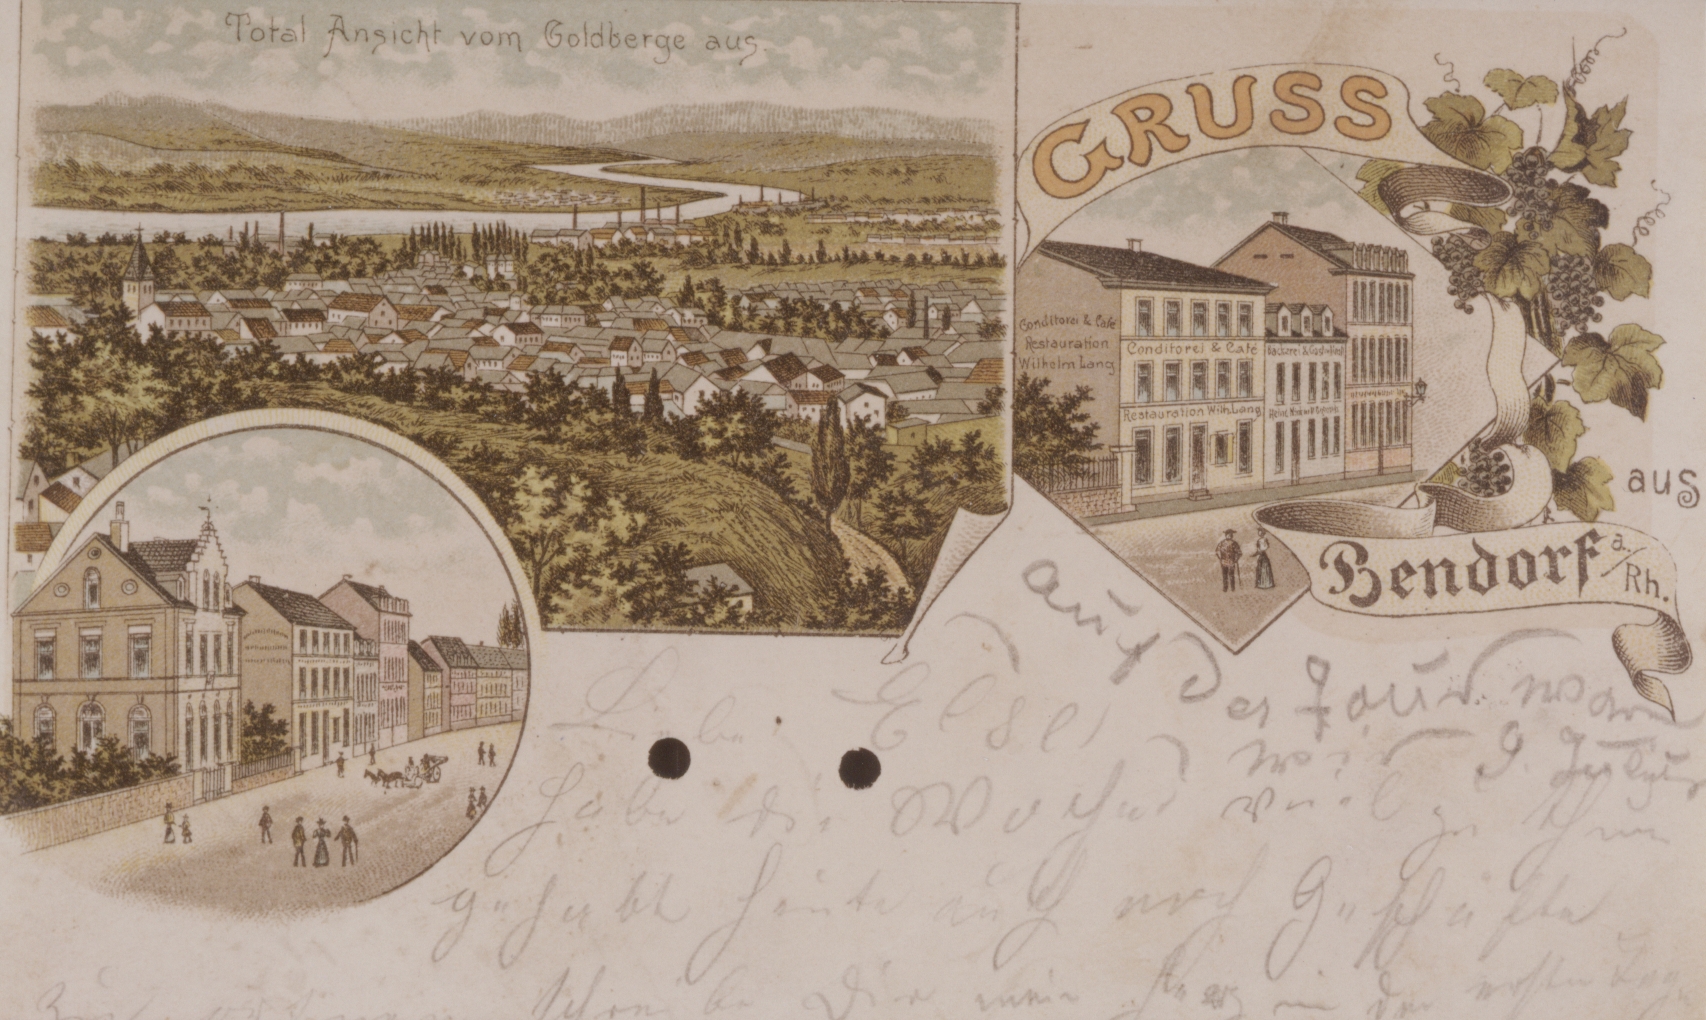 Ansichtskarte der Stadt Bendorf, vor 1900 (REM CC BY-NC-SA)